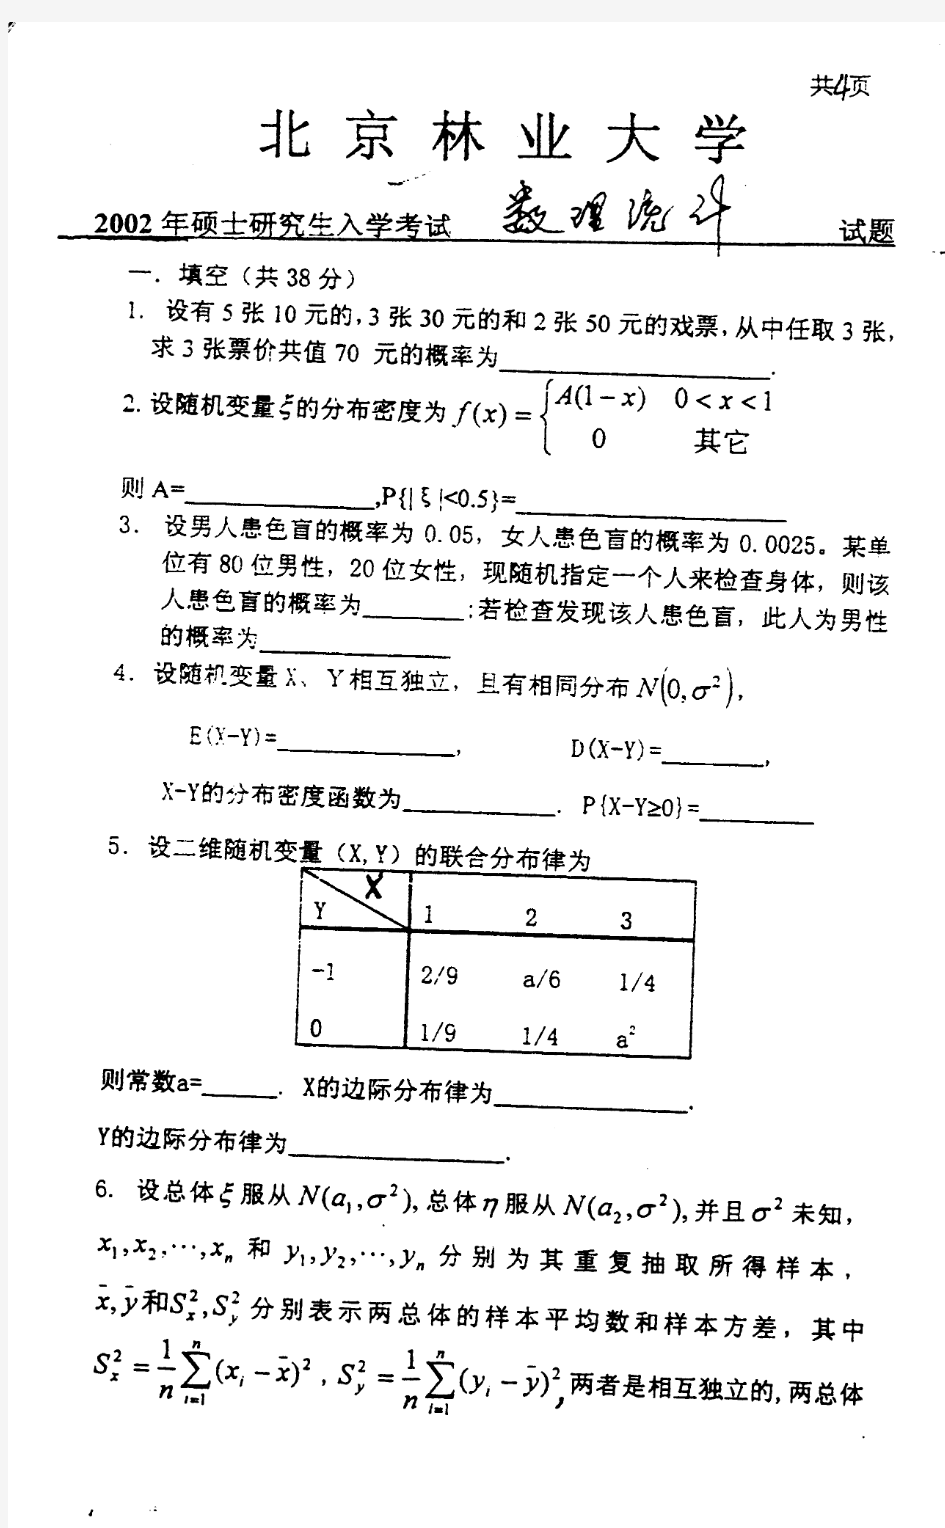 北京林业大学2002年硕士研究生入学考试试题数理统计